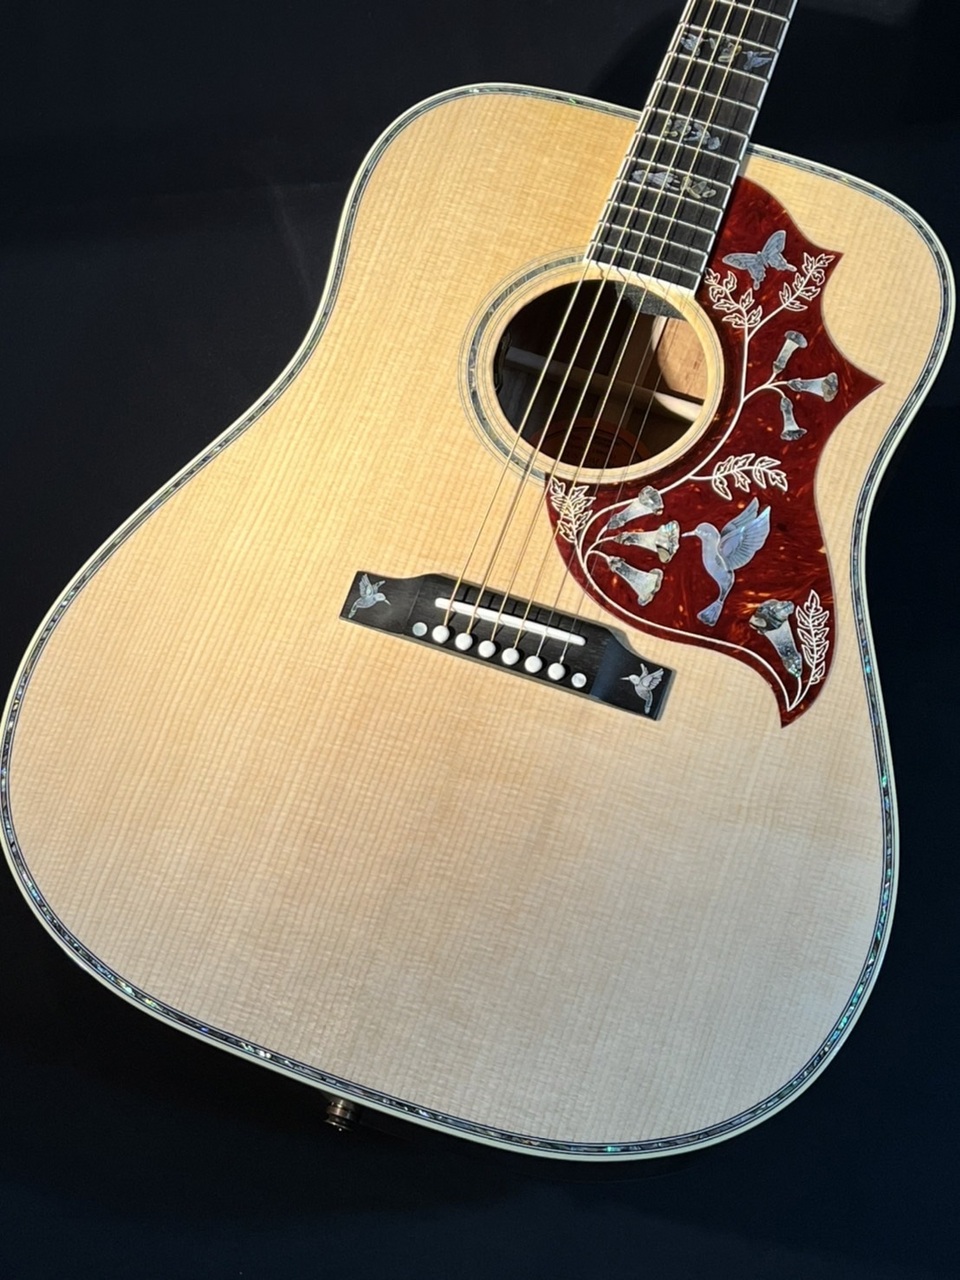 5000円値下げ 美品Gibson hummingbird